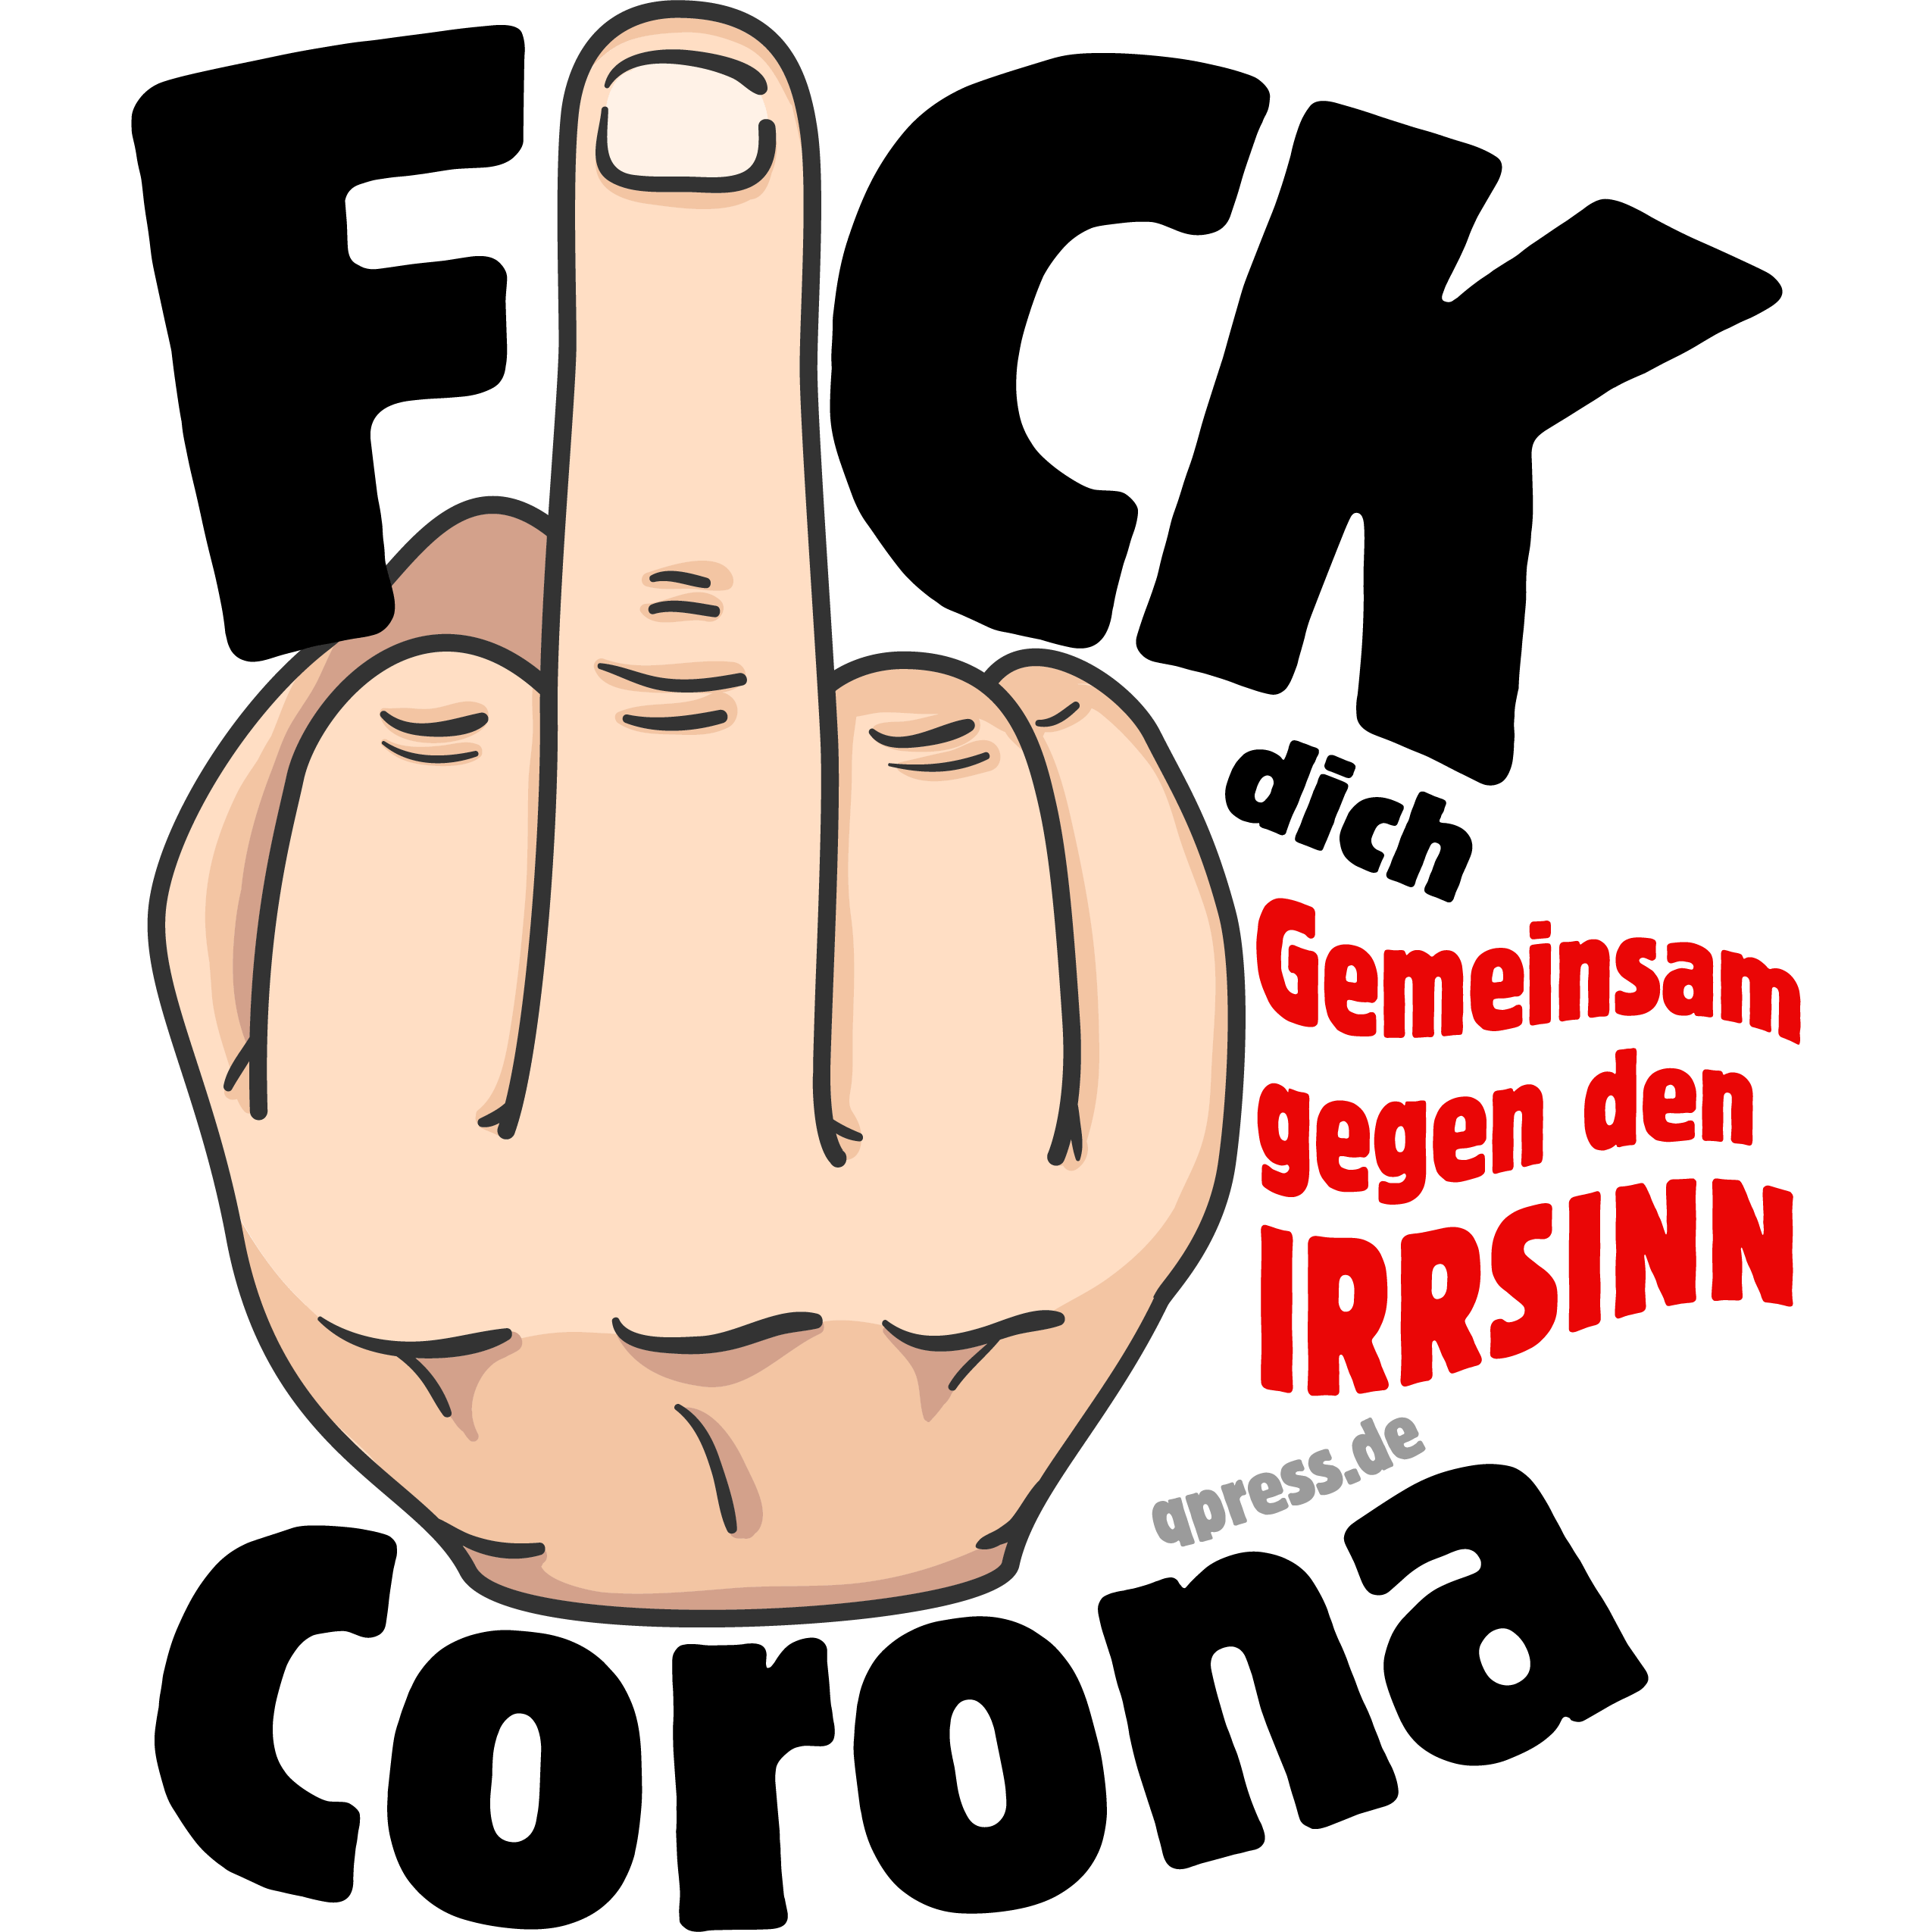 Fuck Fick Dich Corona Irrsinn qpress